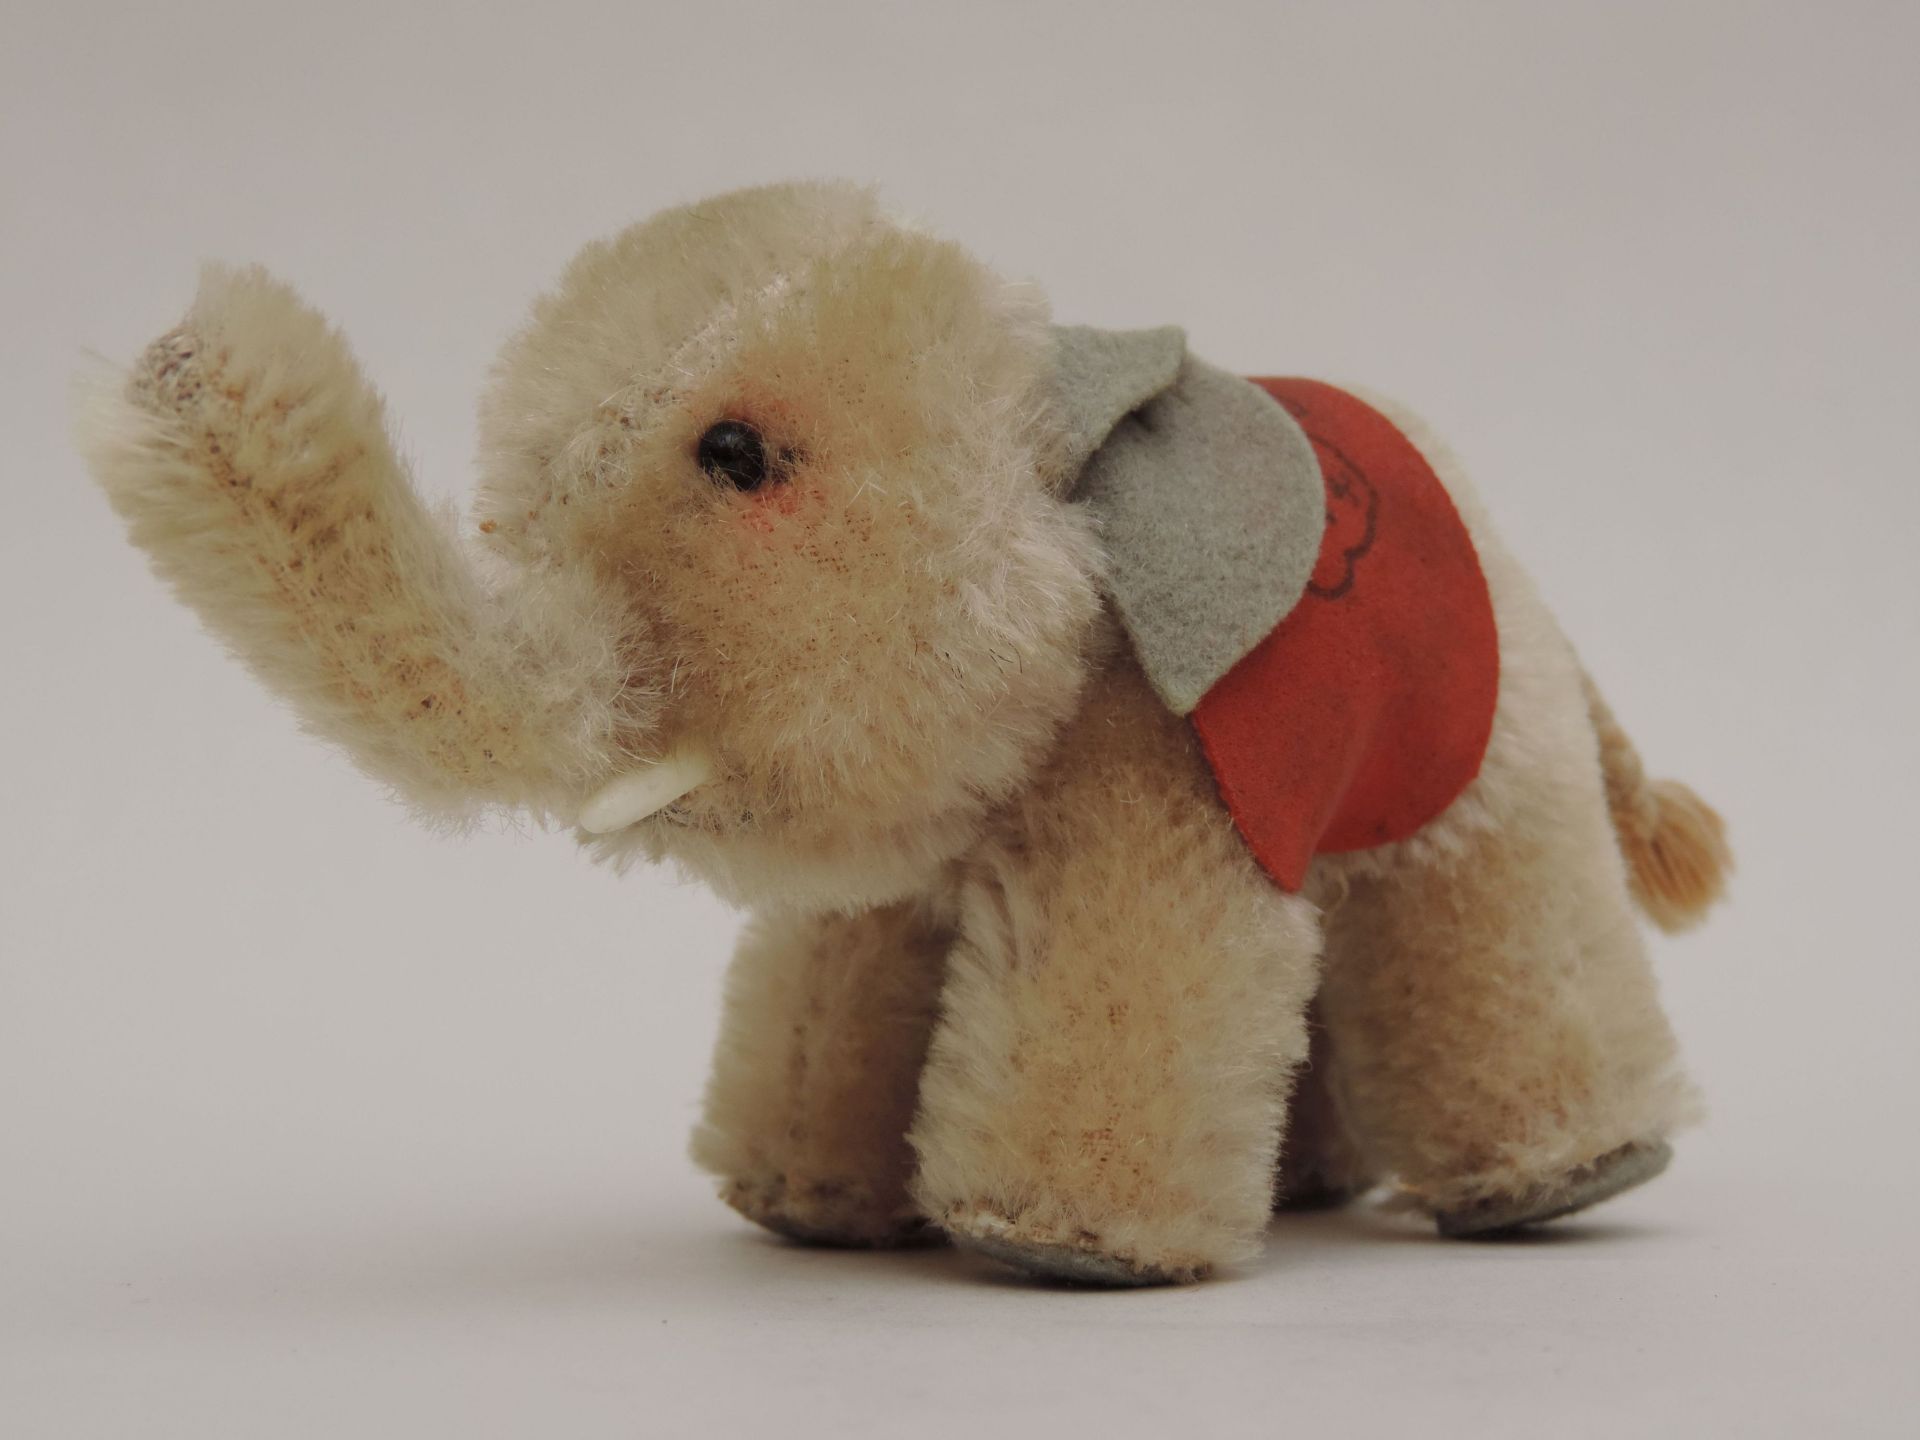 STEIFF-TEDDY, "Elefant", nach Margarete Steiff, *24.7.1847 Giengen +09.05.1909, ca. 1956-1958, Nr.